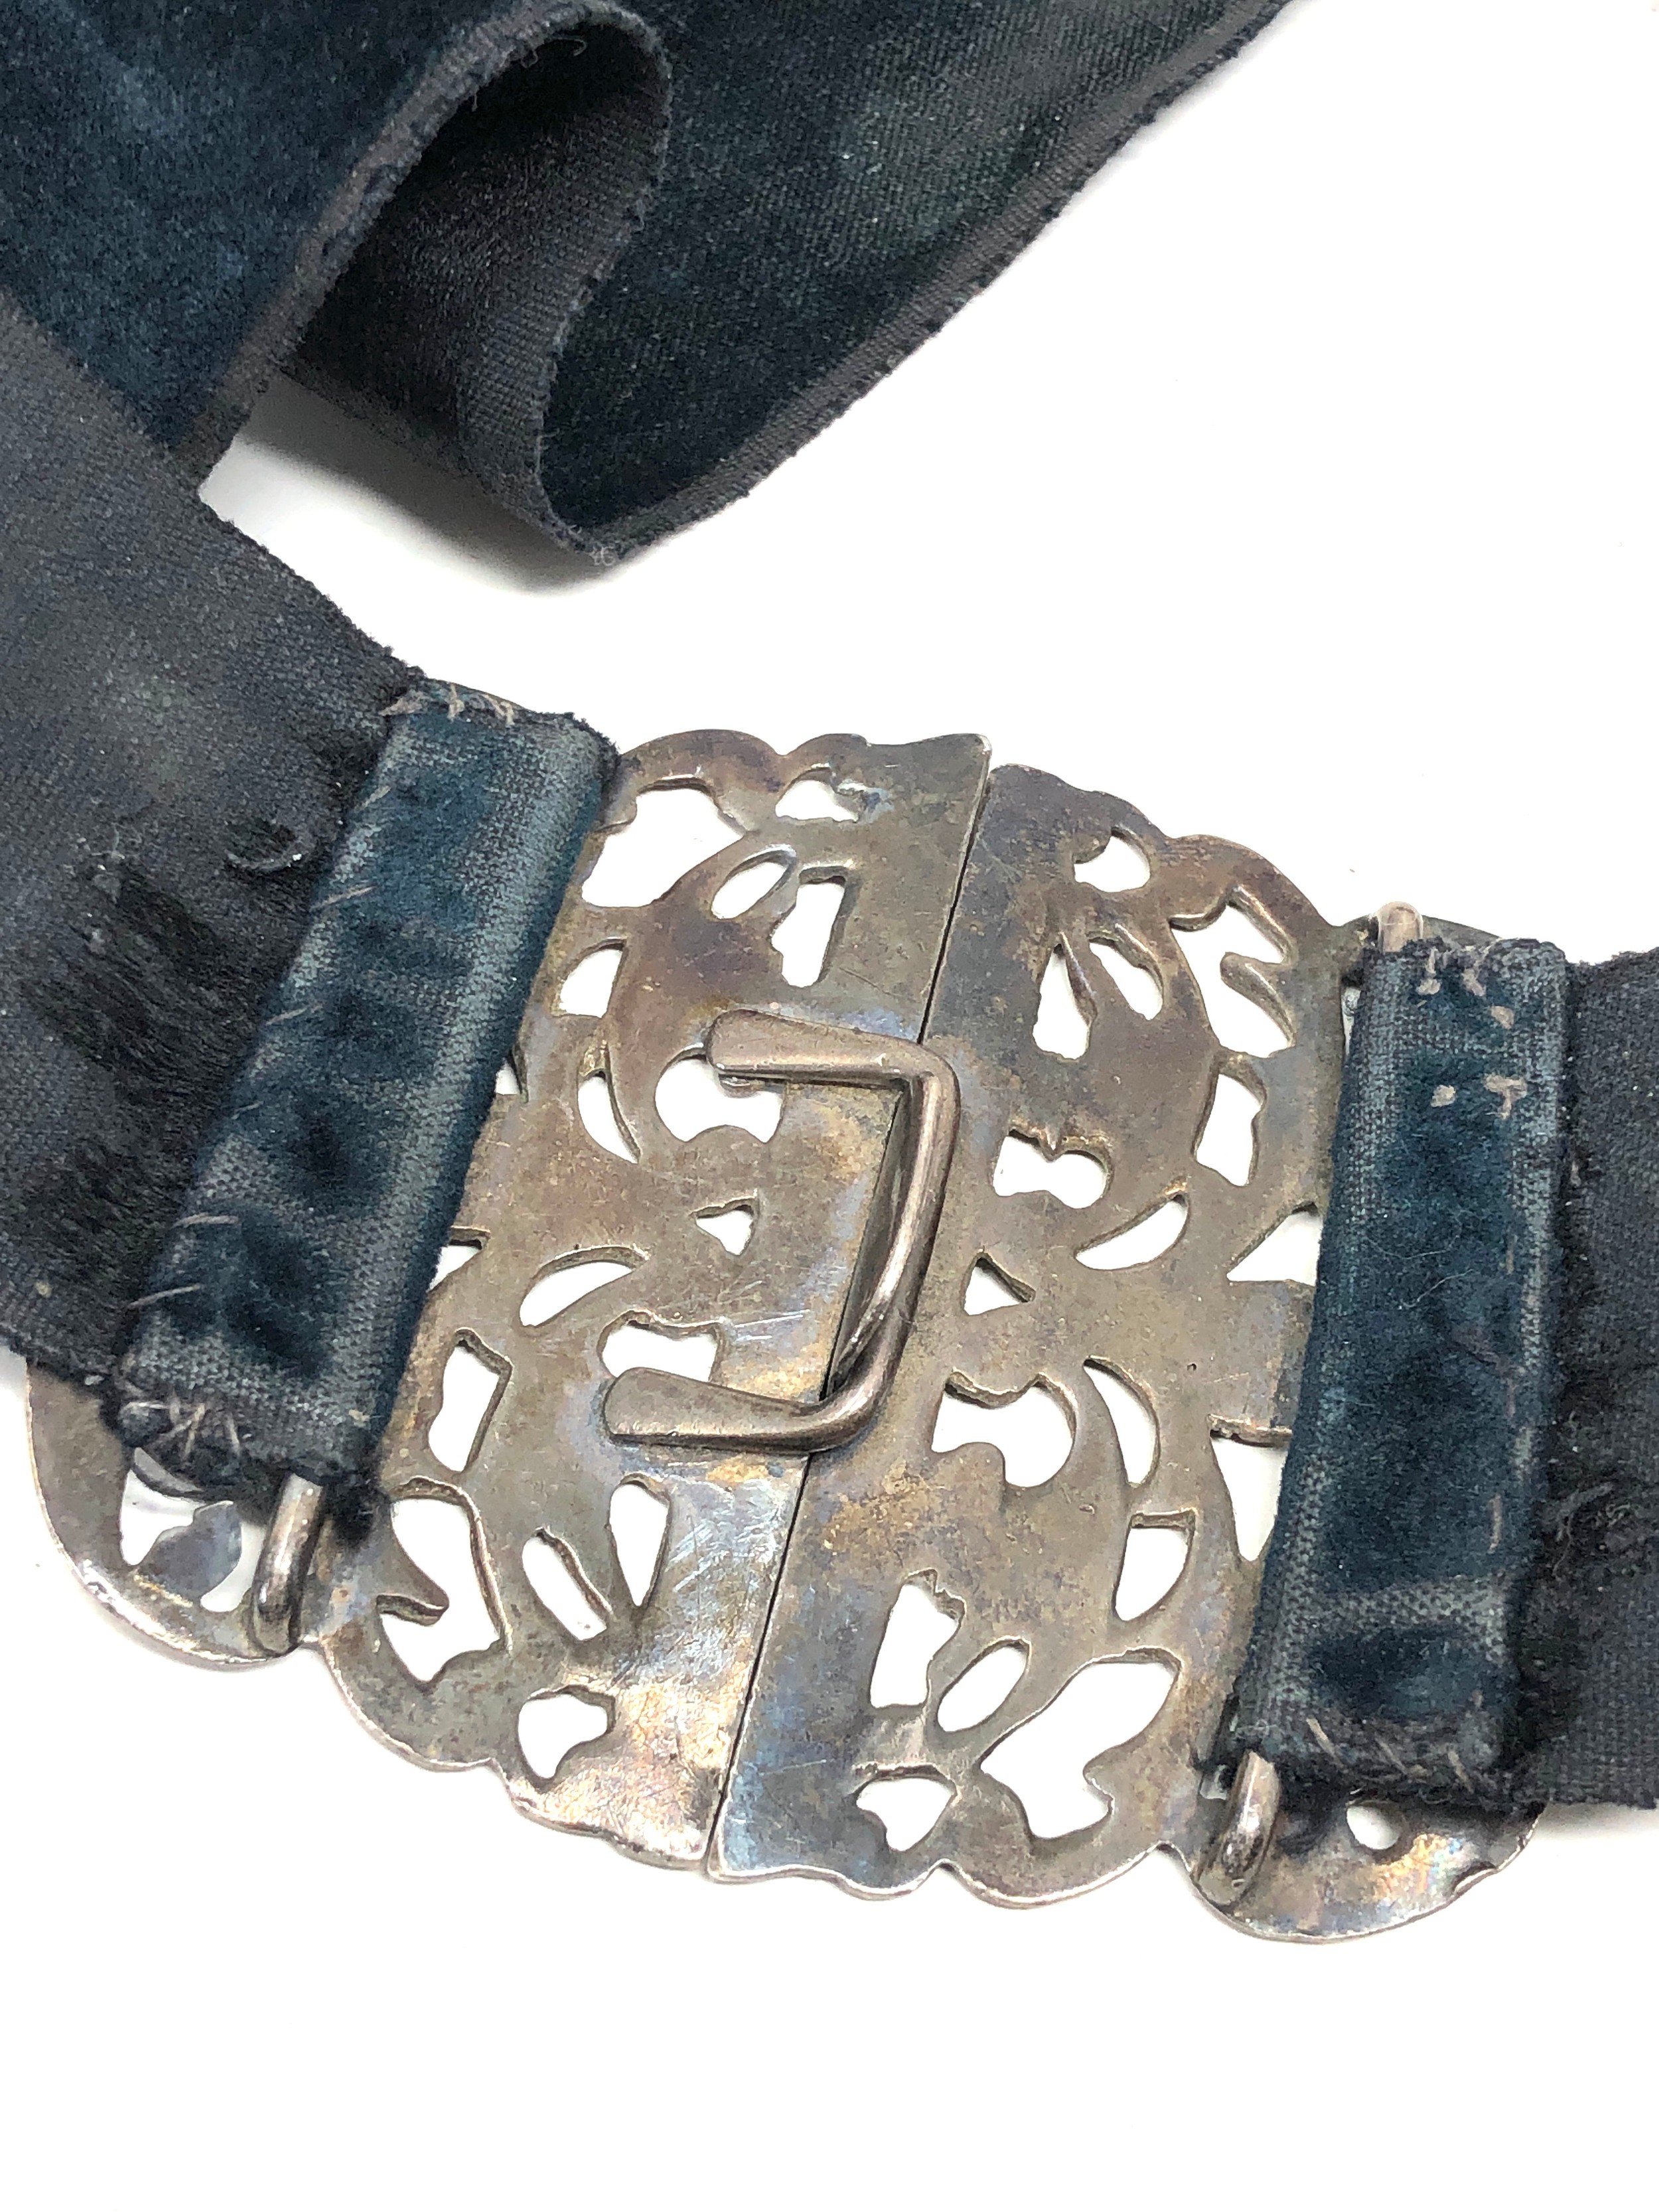 Antique silver nurses buckle chester silver hallmarks - Bild 3 aus 6